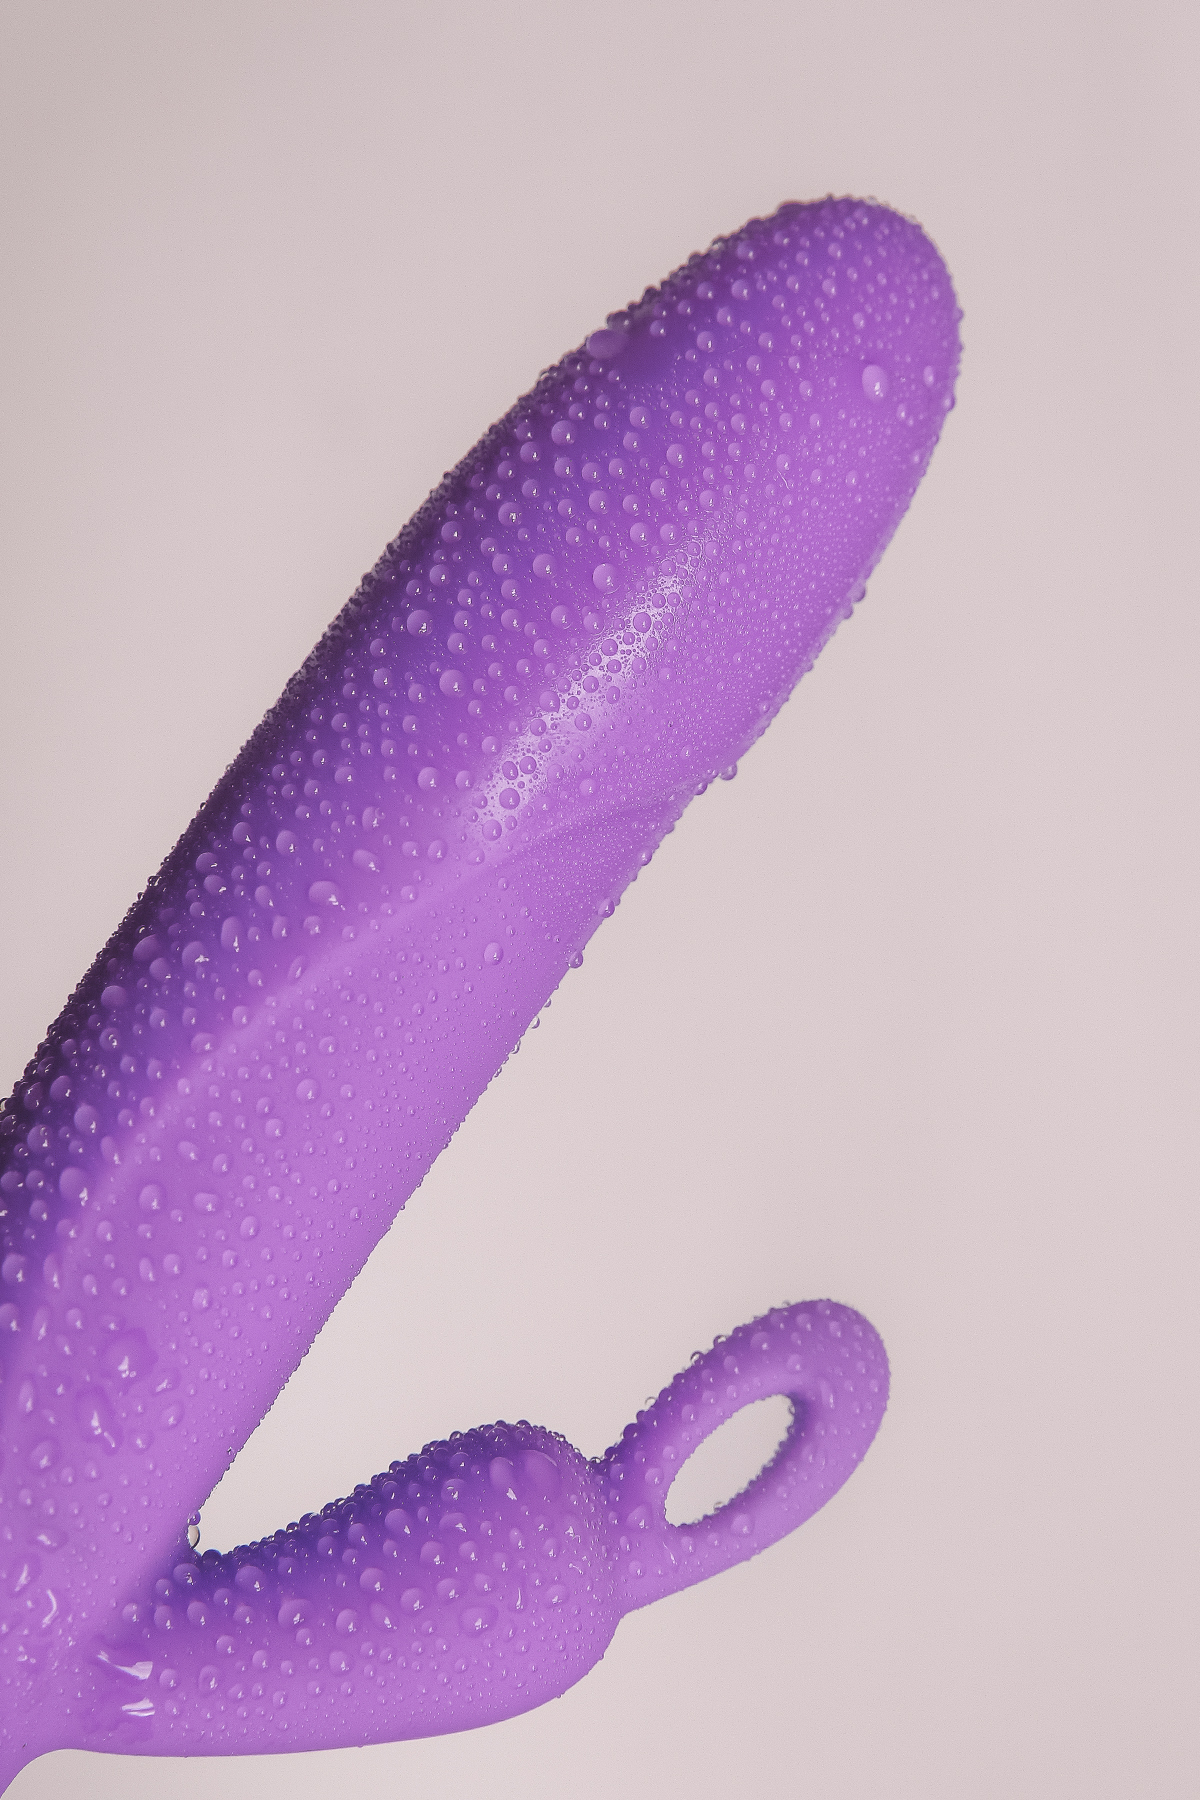 Apie vibratorių: 
Medžiaga: silikonas 
Spalva: Lila (violetinė) 
Matmenys: Ilgis 19,7 cm / Skersmuo 3,6 cm 
Funkcijų skaičius: 10 
Variklių skaičius: 2 
Hidroizoliacija: Atsparus purslams - IPX5 
Stimuliavimo zona: makštis / klitoris / Punto G